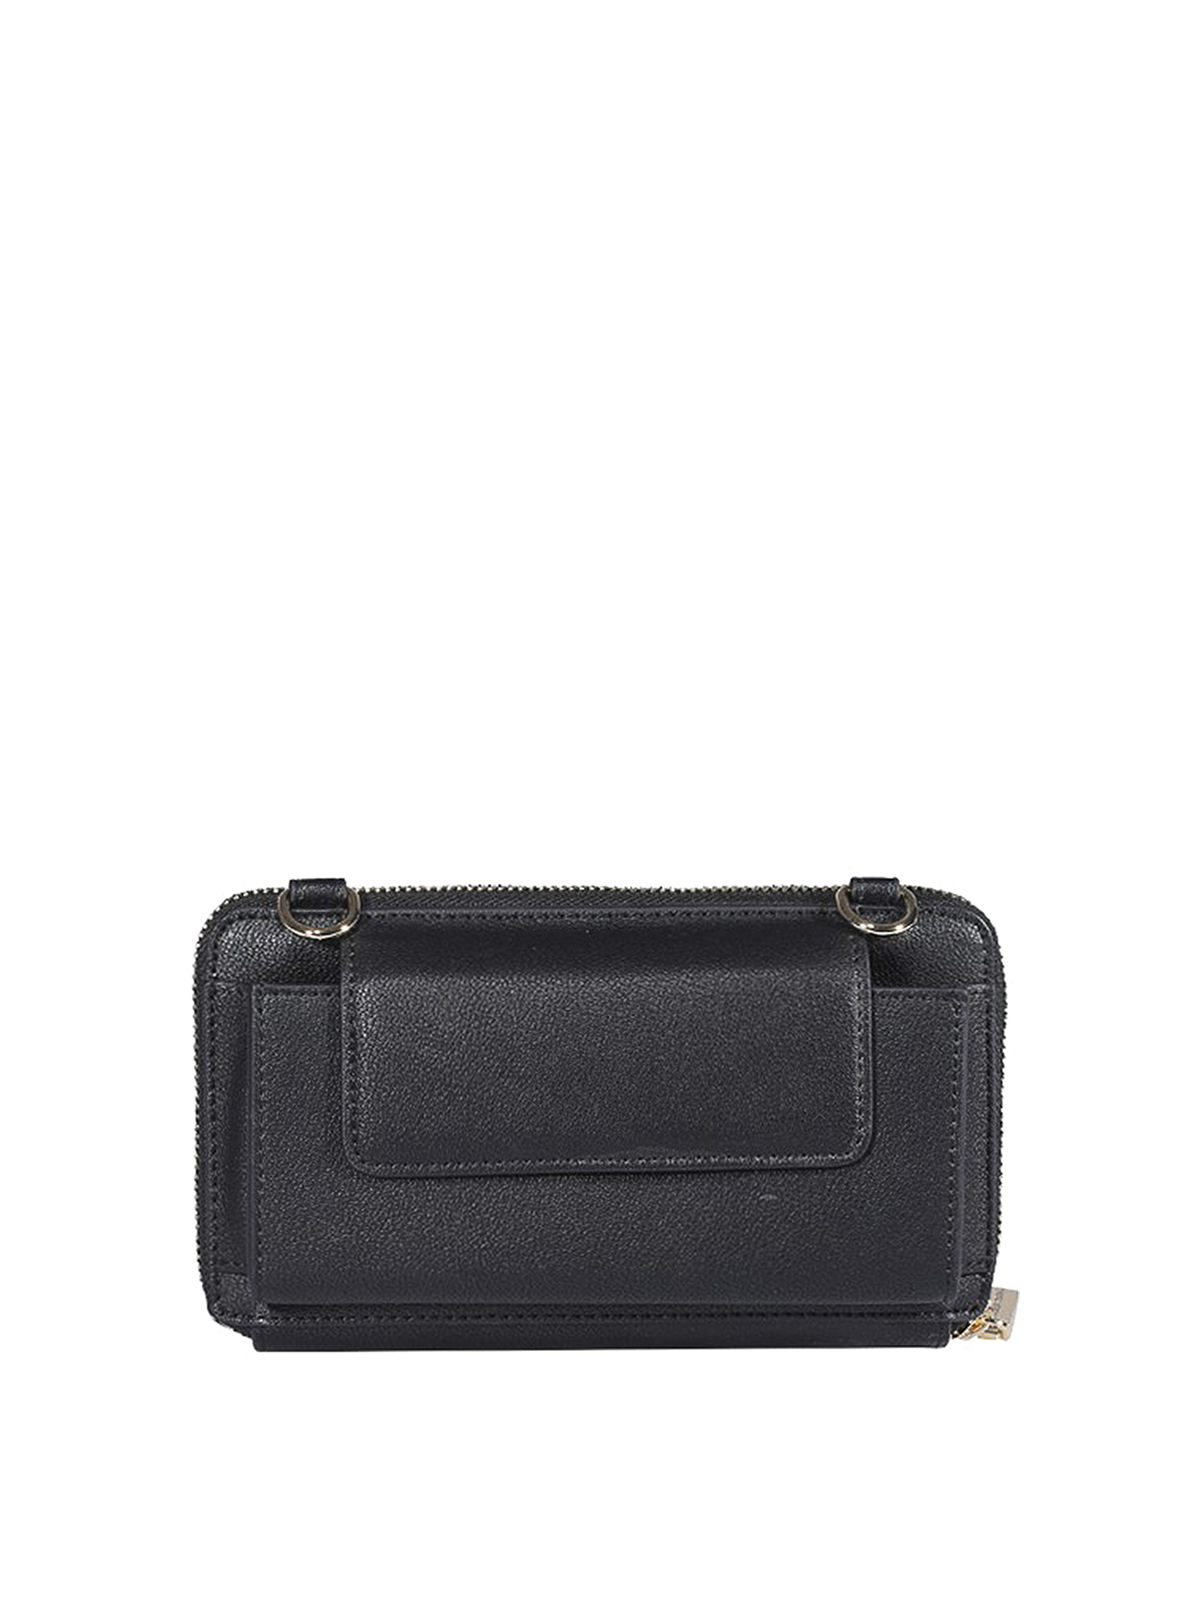 Wallets & purses Chiara Ferragni - Eye Star wallet in black